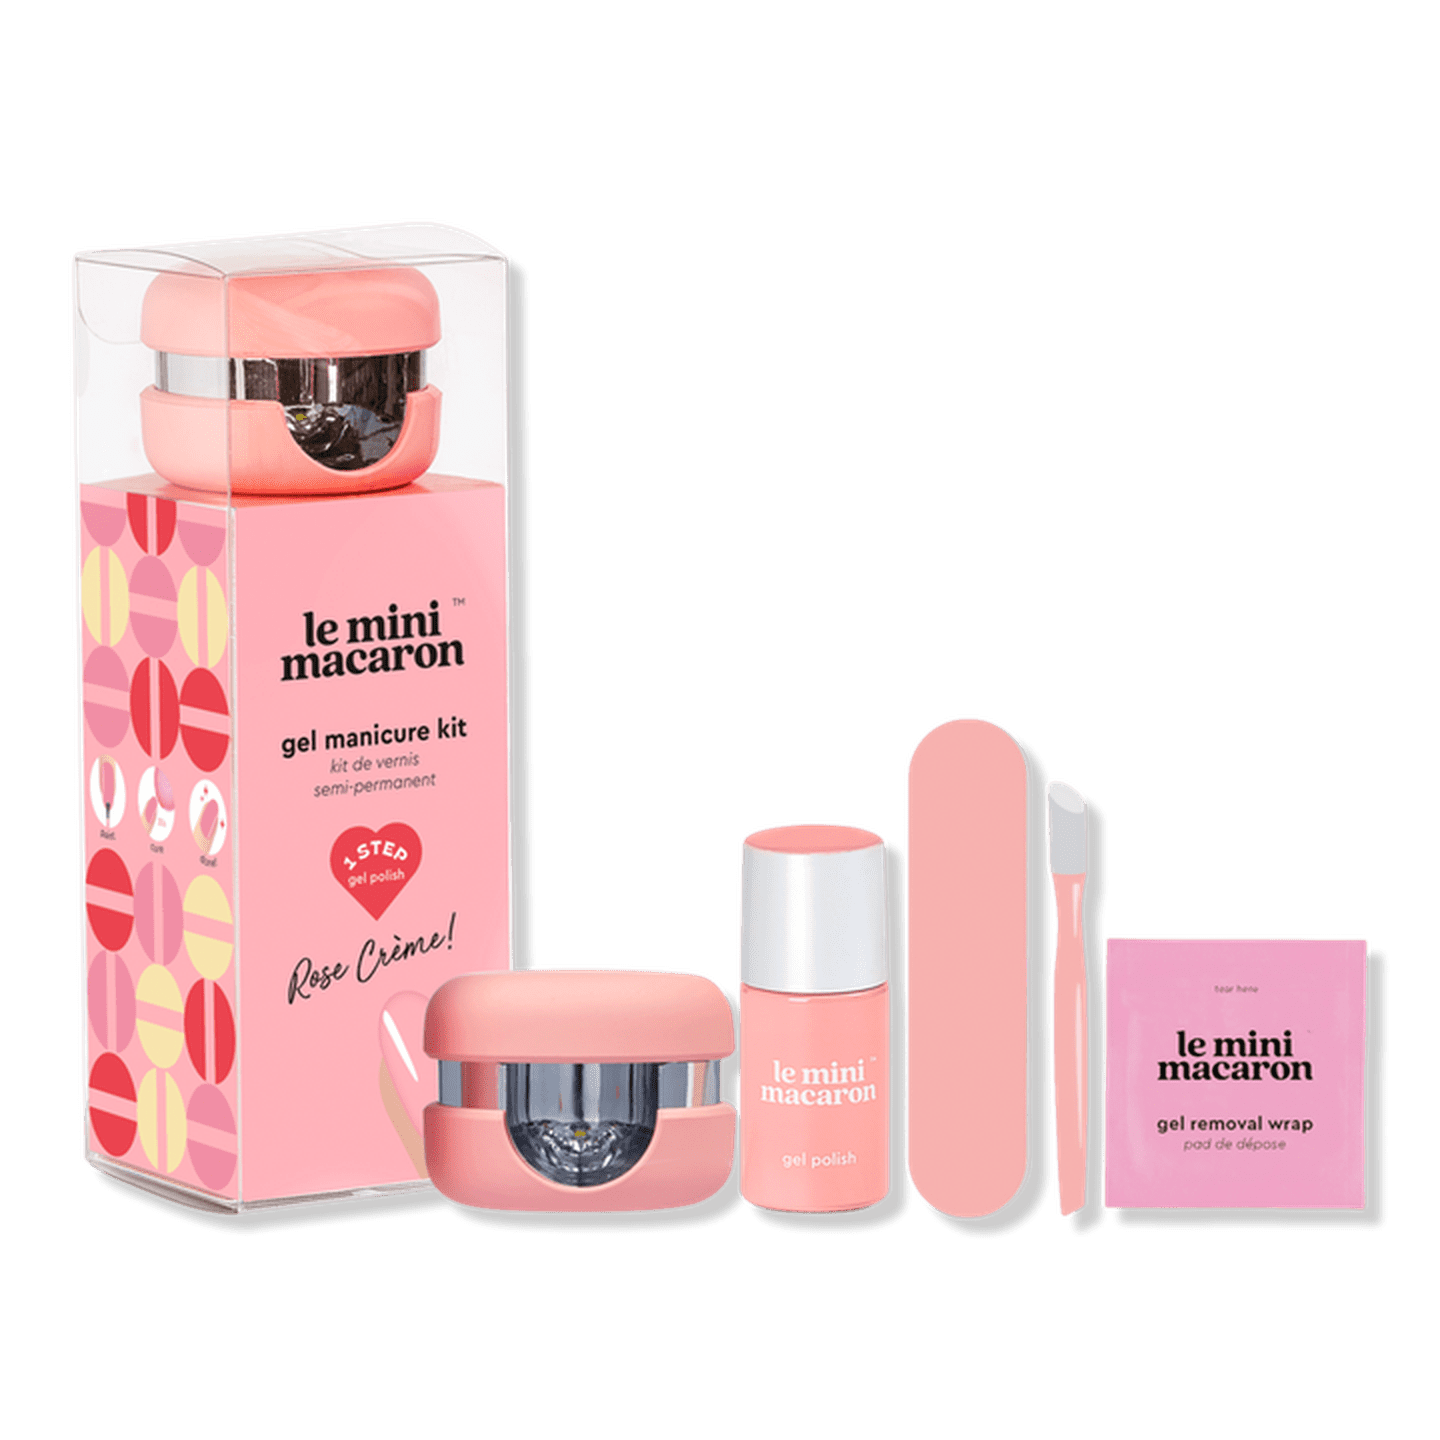 Le Mini Macaron Gel Manicure Kit Review | POPSUGAR Beauty